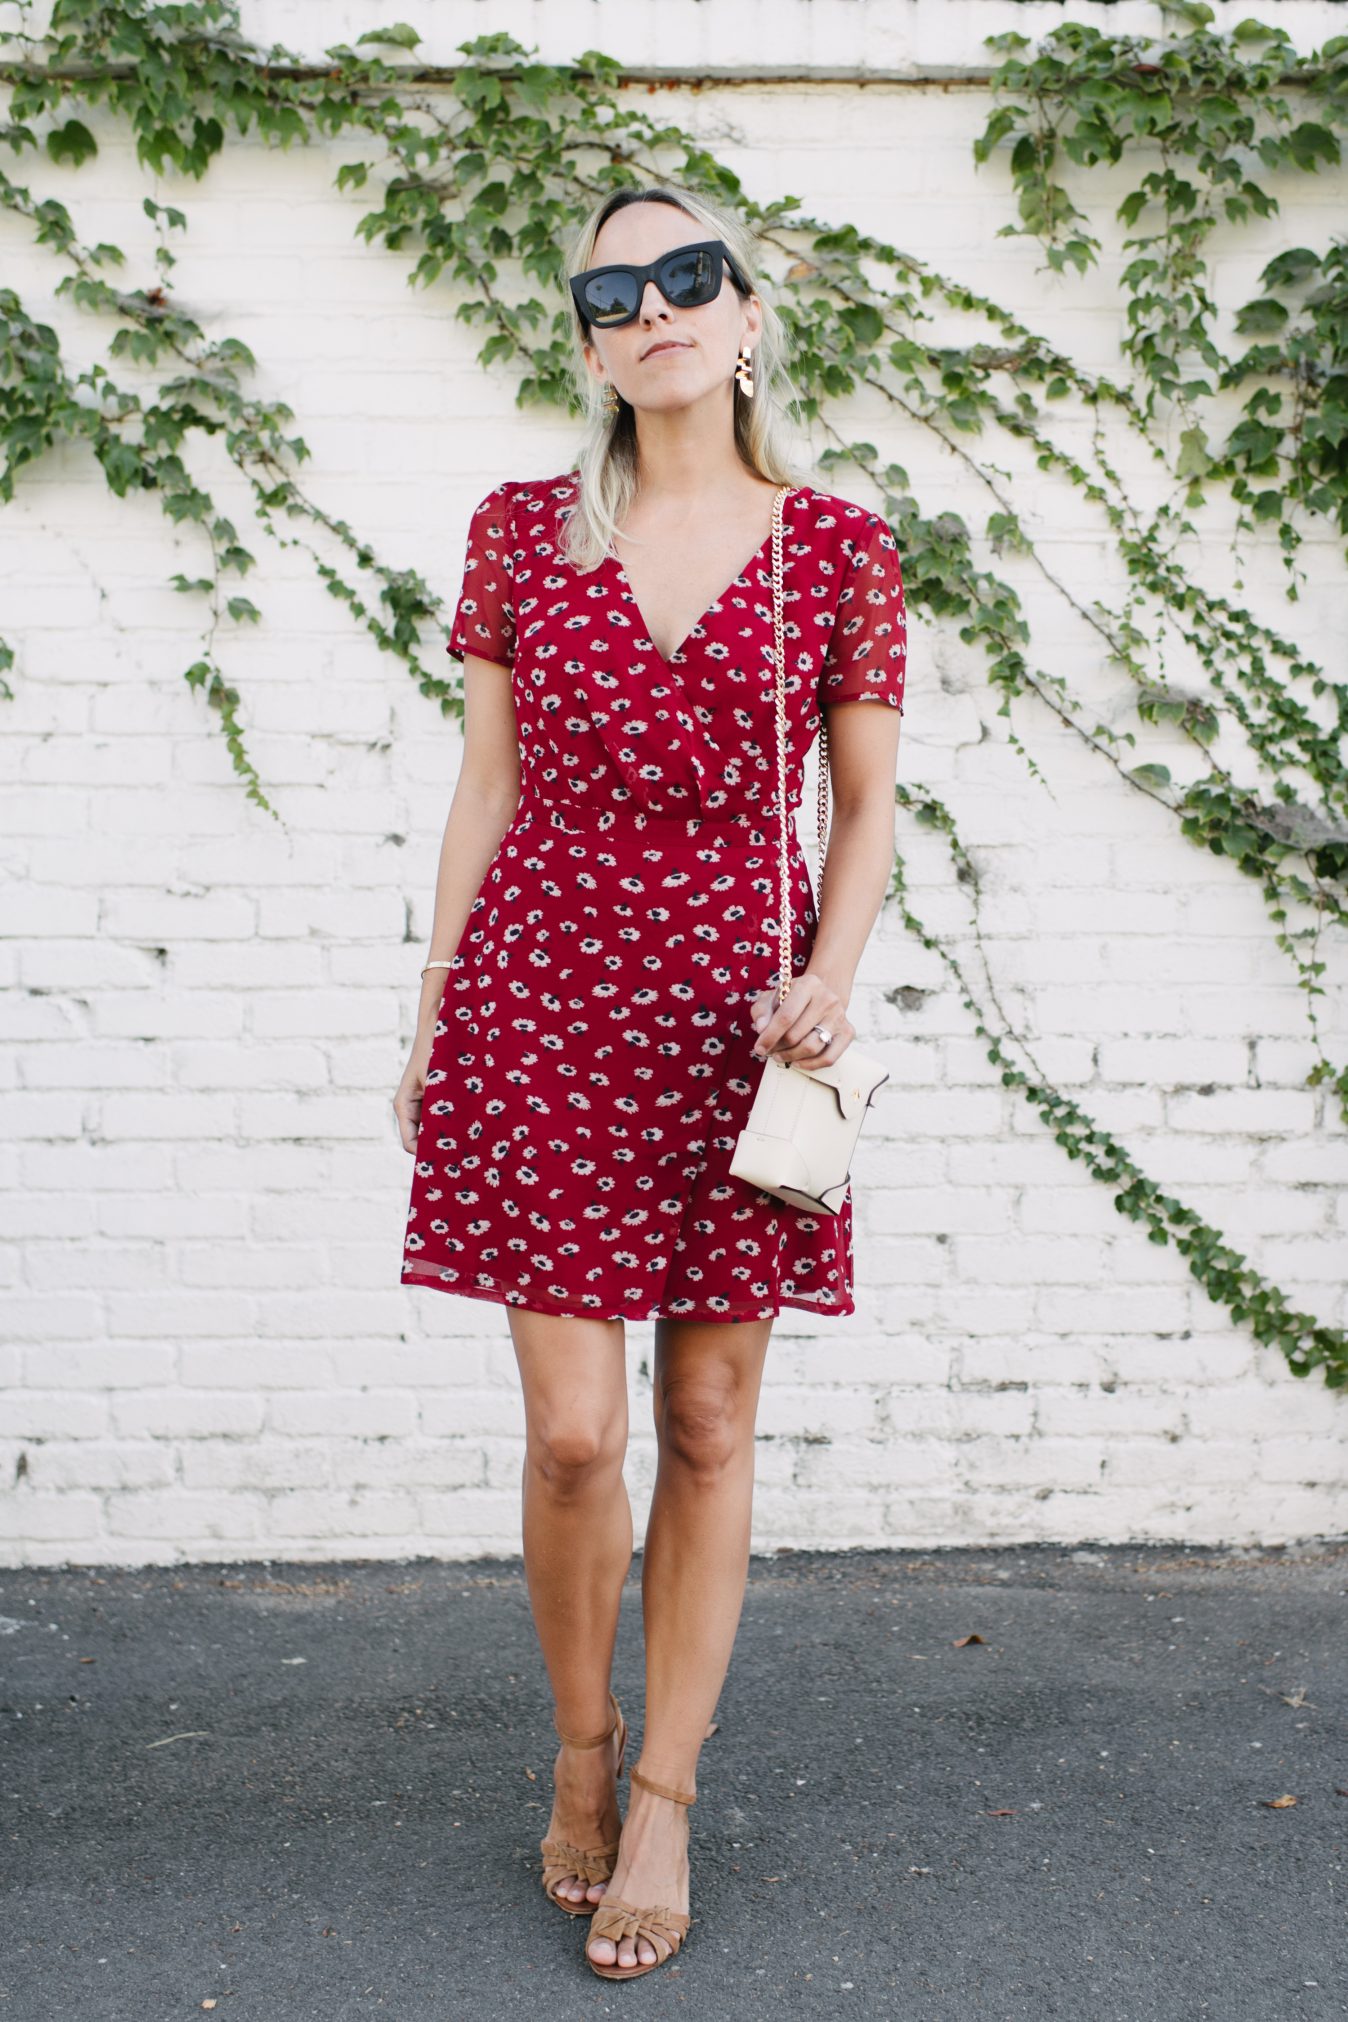 Red Floral Dress in August | DAMSEL IN DIOR | Bloglovin’